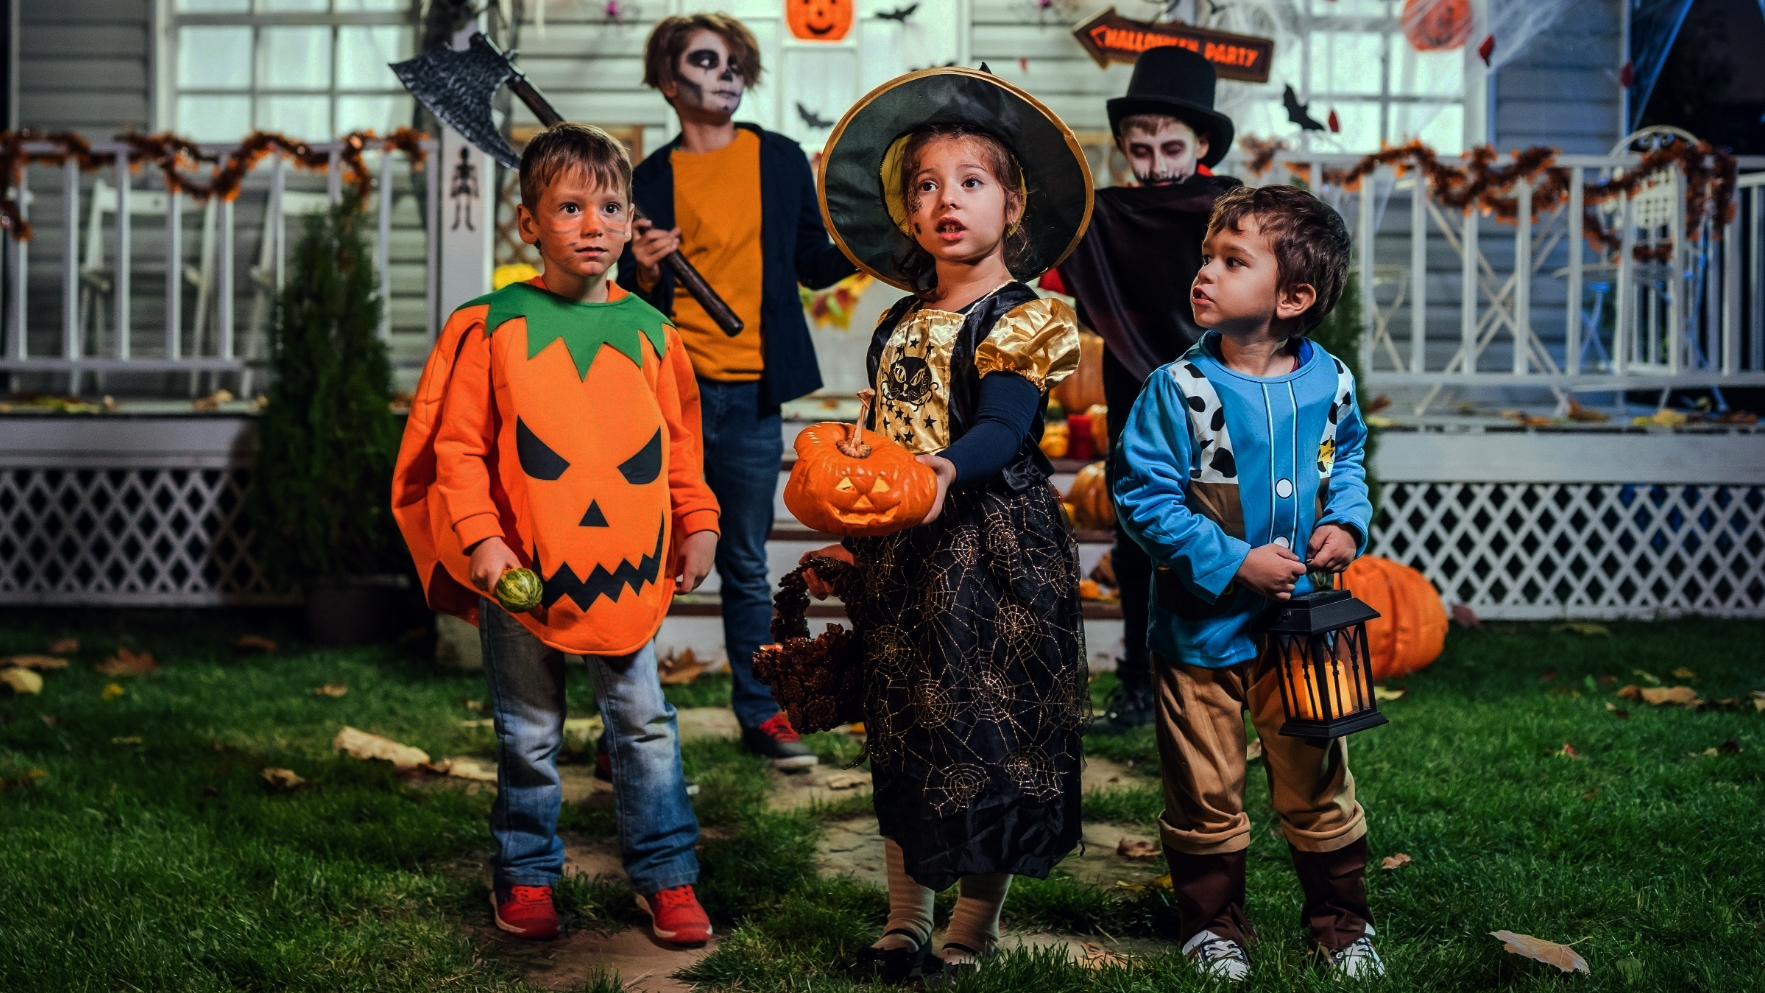 Halloweeni képek - A félelmetesen jó felvételek receptje